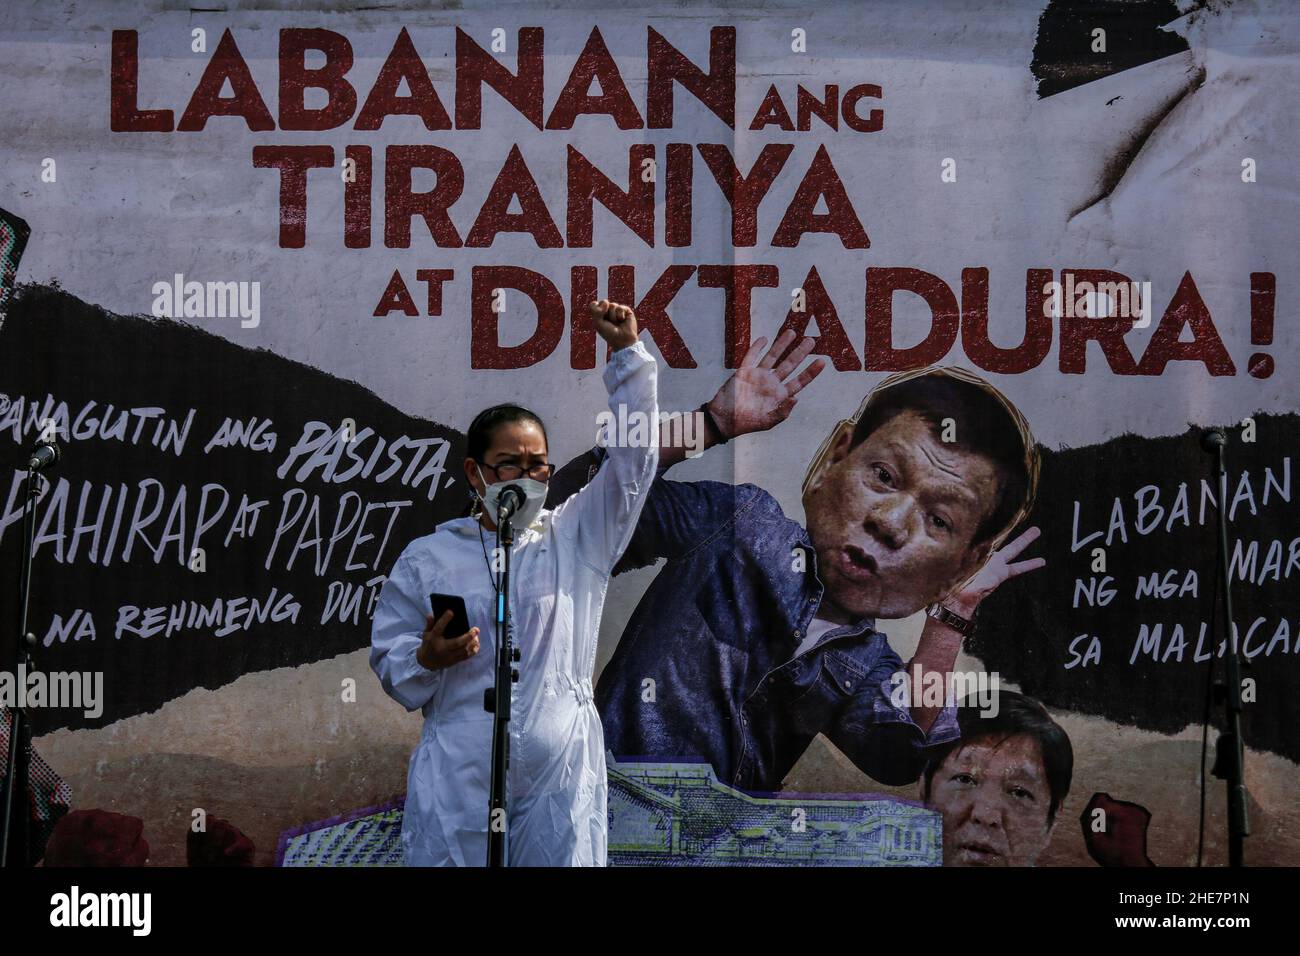 Demonstranten tragen während eines Protestes zum Internationalen Menschenrechtstag 73rd an der Universität der Philippinen in Quezon City, Metro Manila, Schilder. Tausende von Aktivisten verschiedener Gruppen haben sich gegen die Umsetzung des umstrittenen Anti-Terror-Gesetzes und angebliche Menschenrechtsverletzungen, darunter Angriffe auf Medienarbeiter und angebliche außergerichtliche Tötungen bei Präsident Dutertes Vorgehen gegen illegale Drogen, eingesetzt. Philippinen. Stockfoto